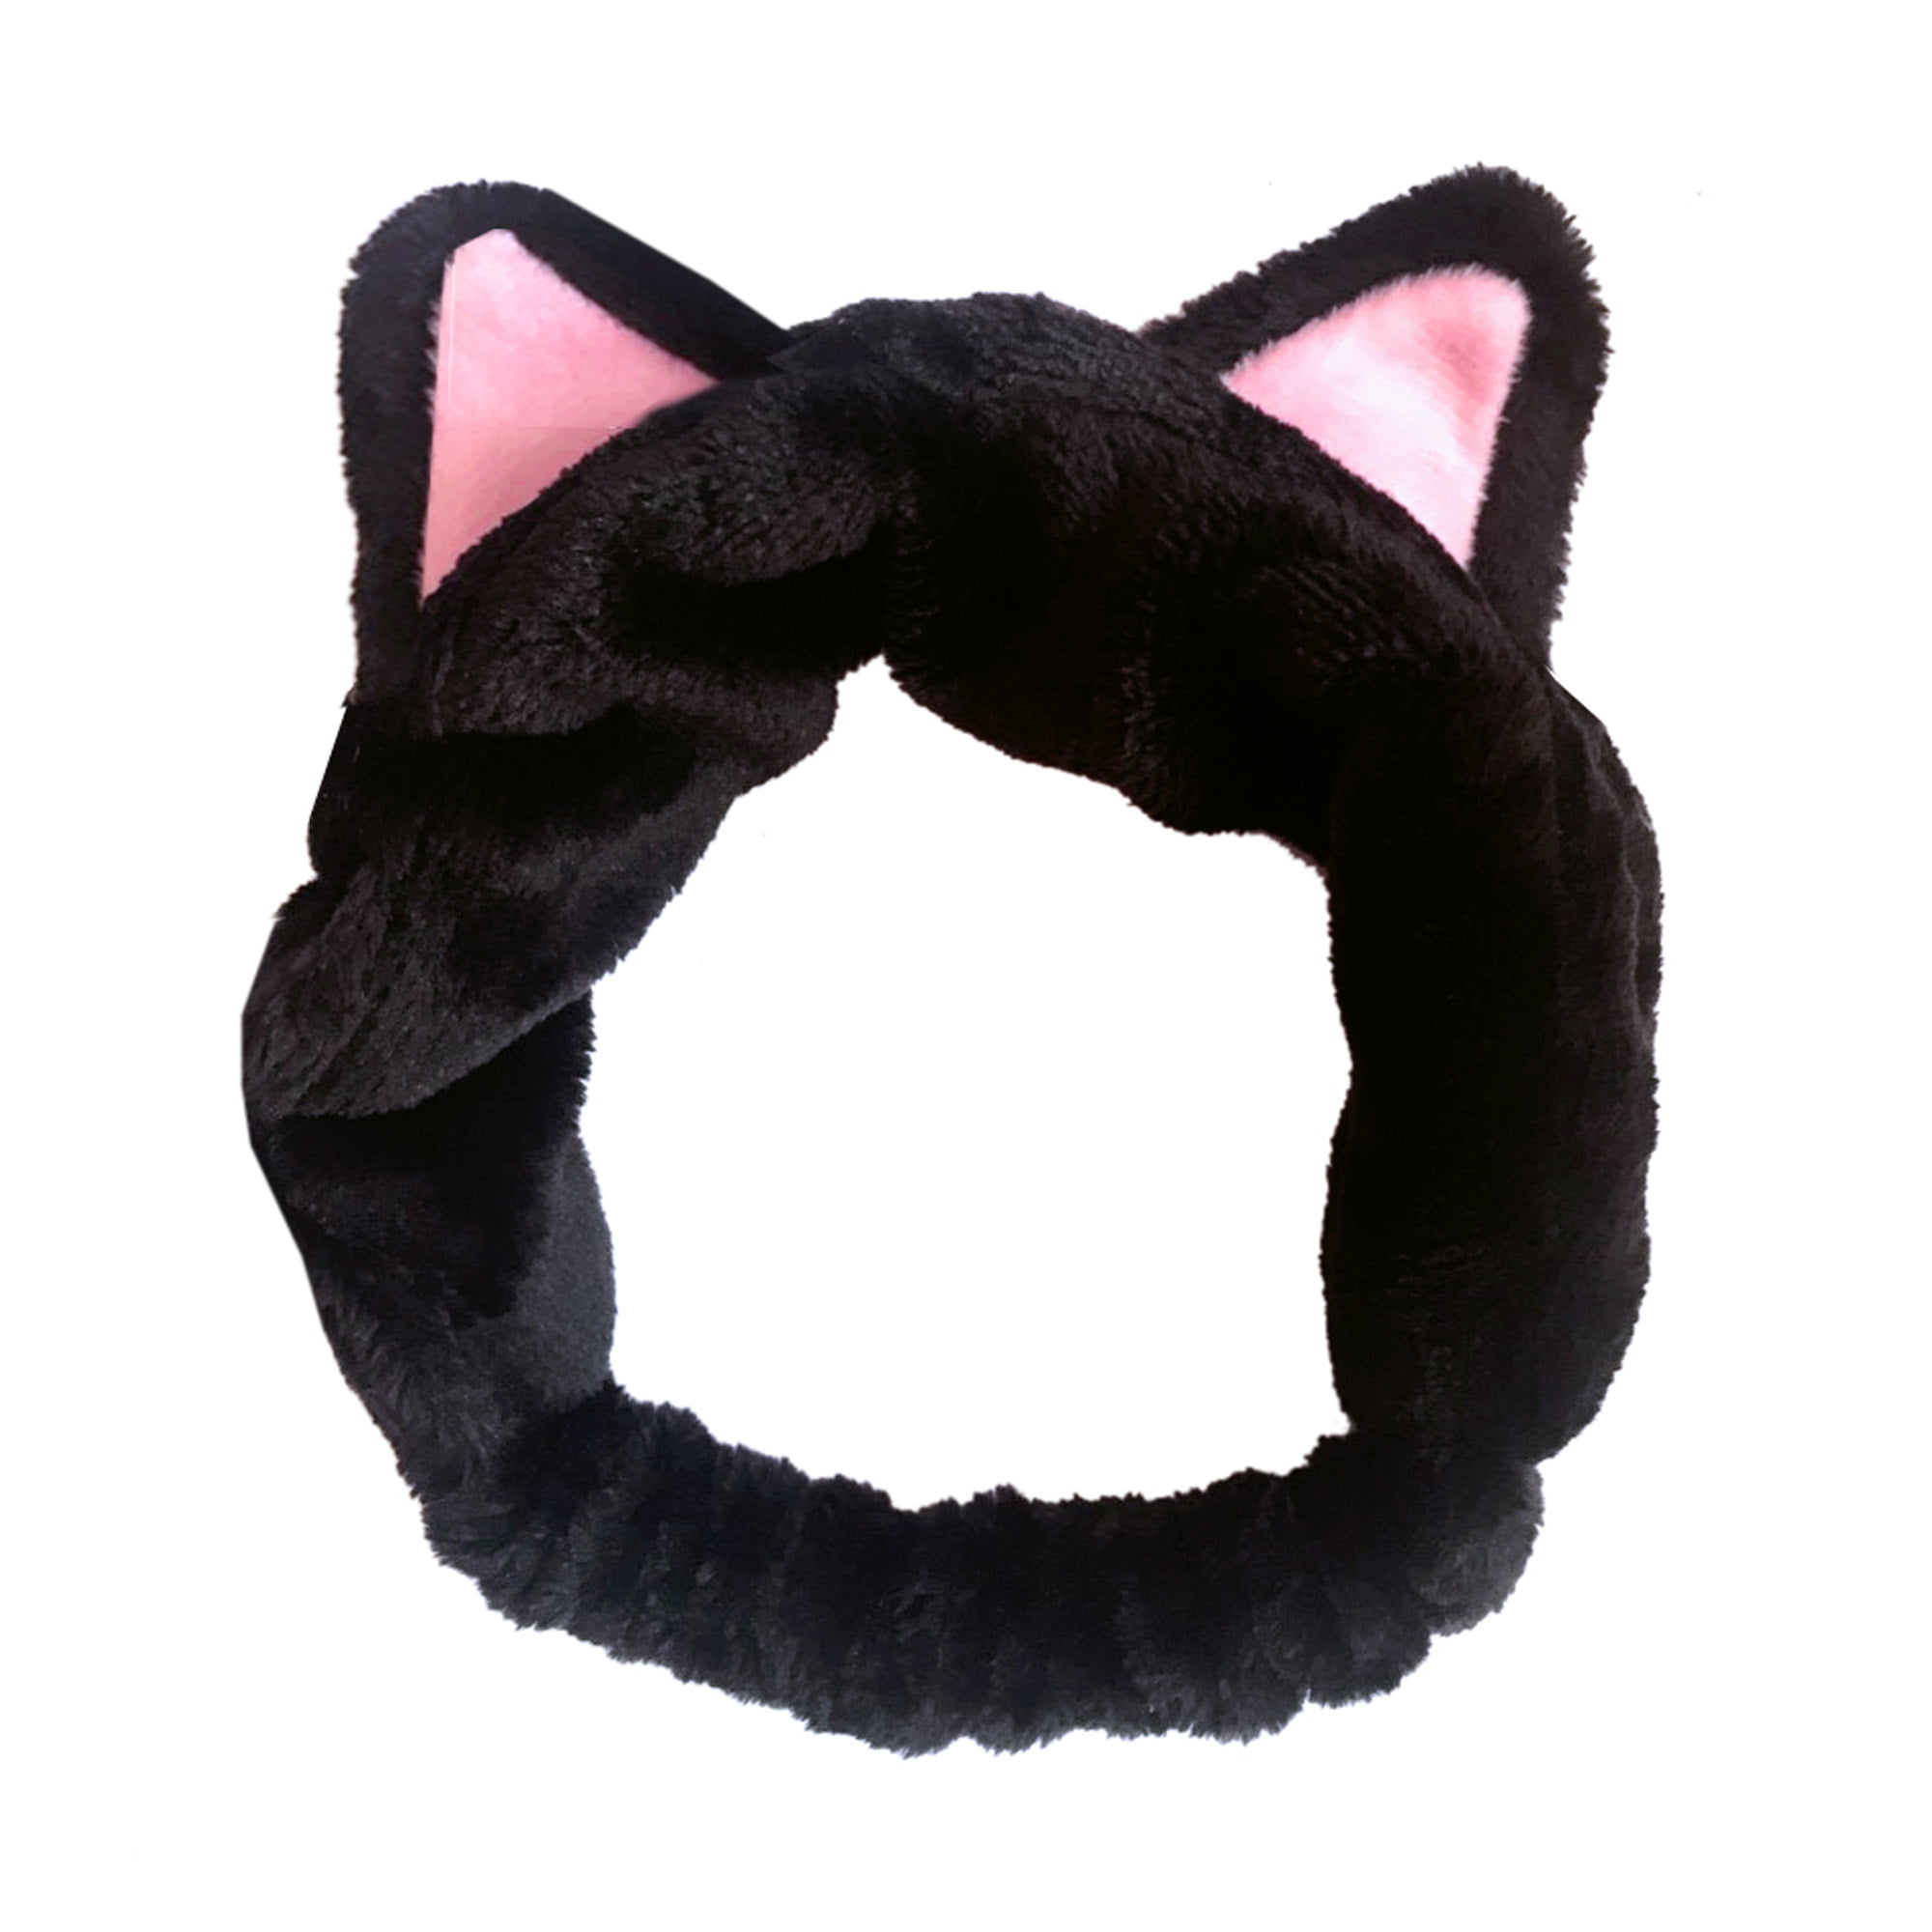 KITTY cat ears headband cat headband makeup headband sweatband face washing hair wrap cat ears personalized headband kitty ears